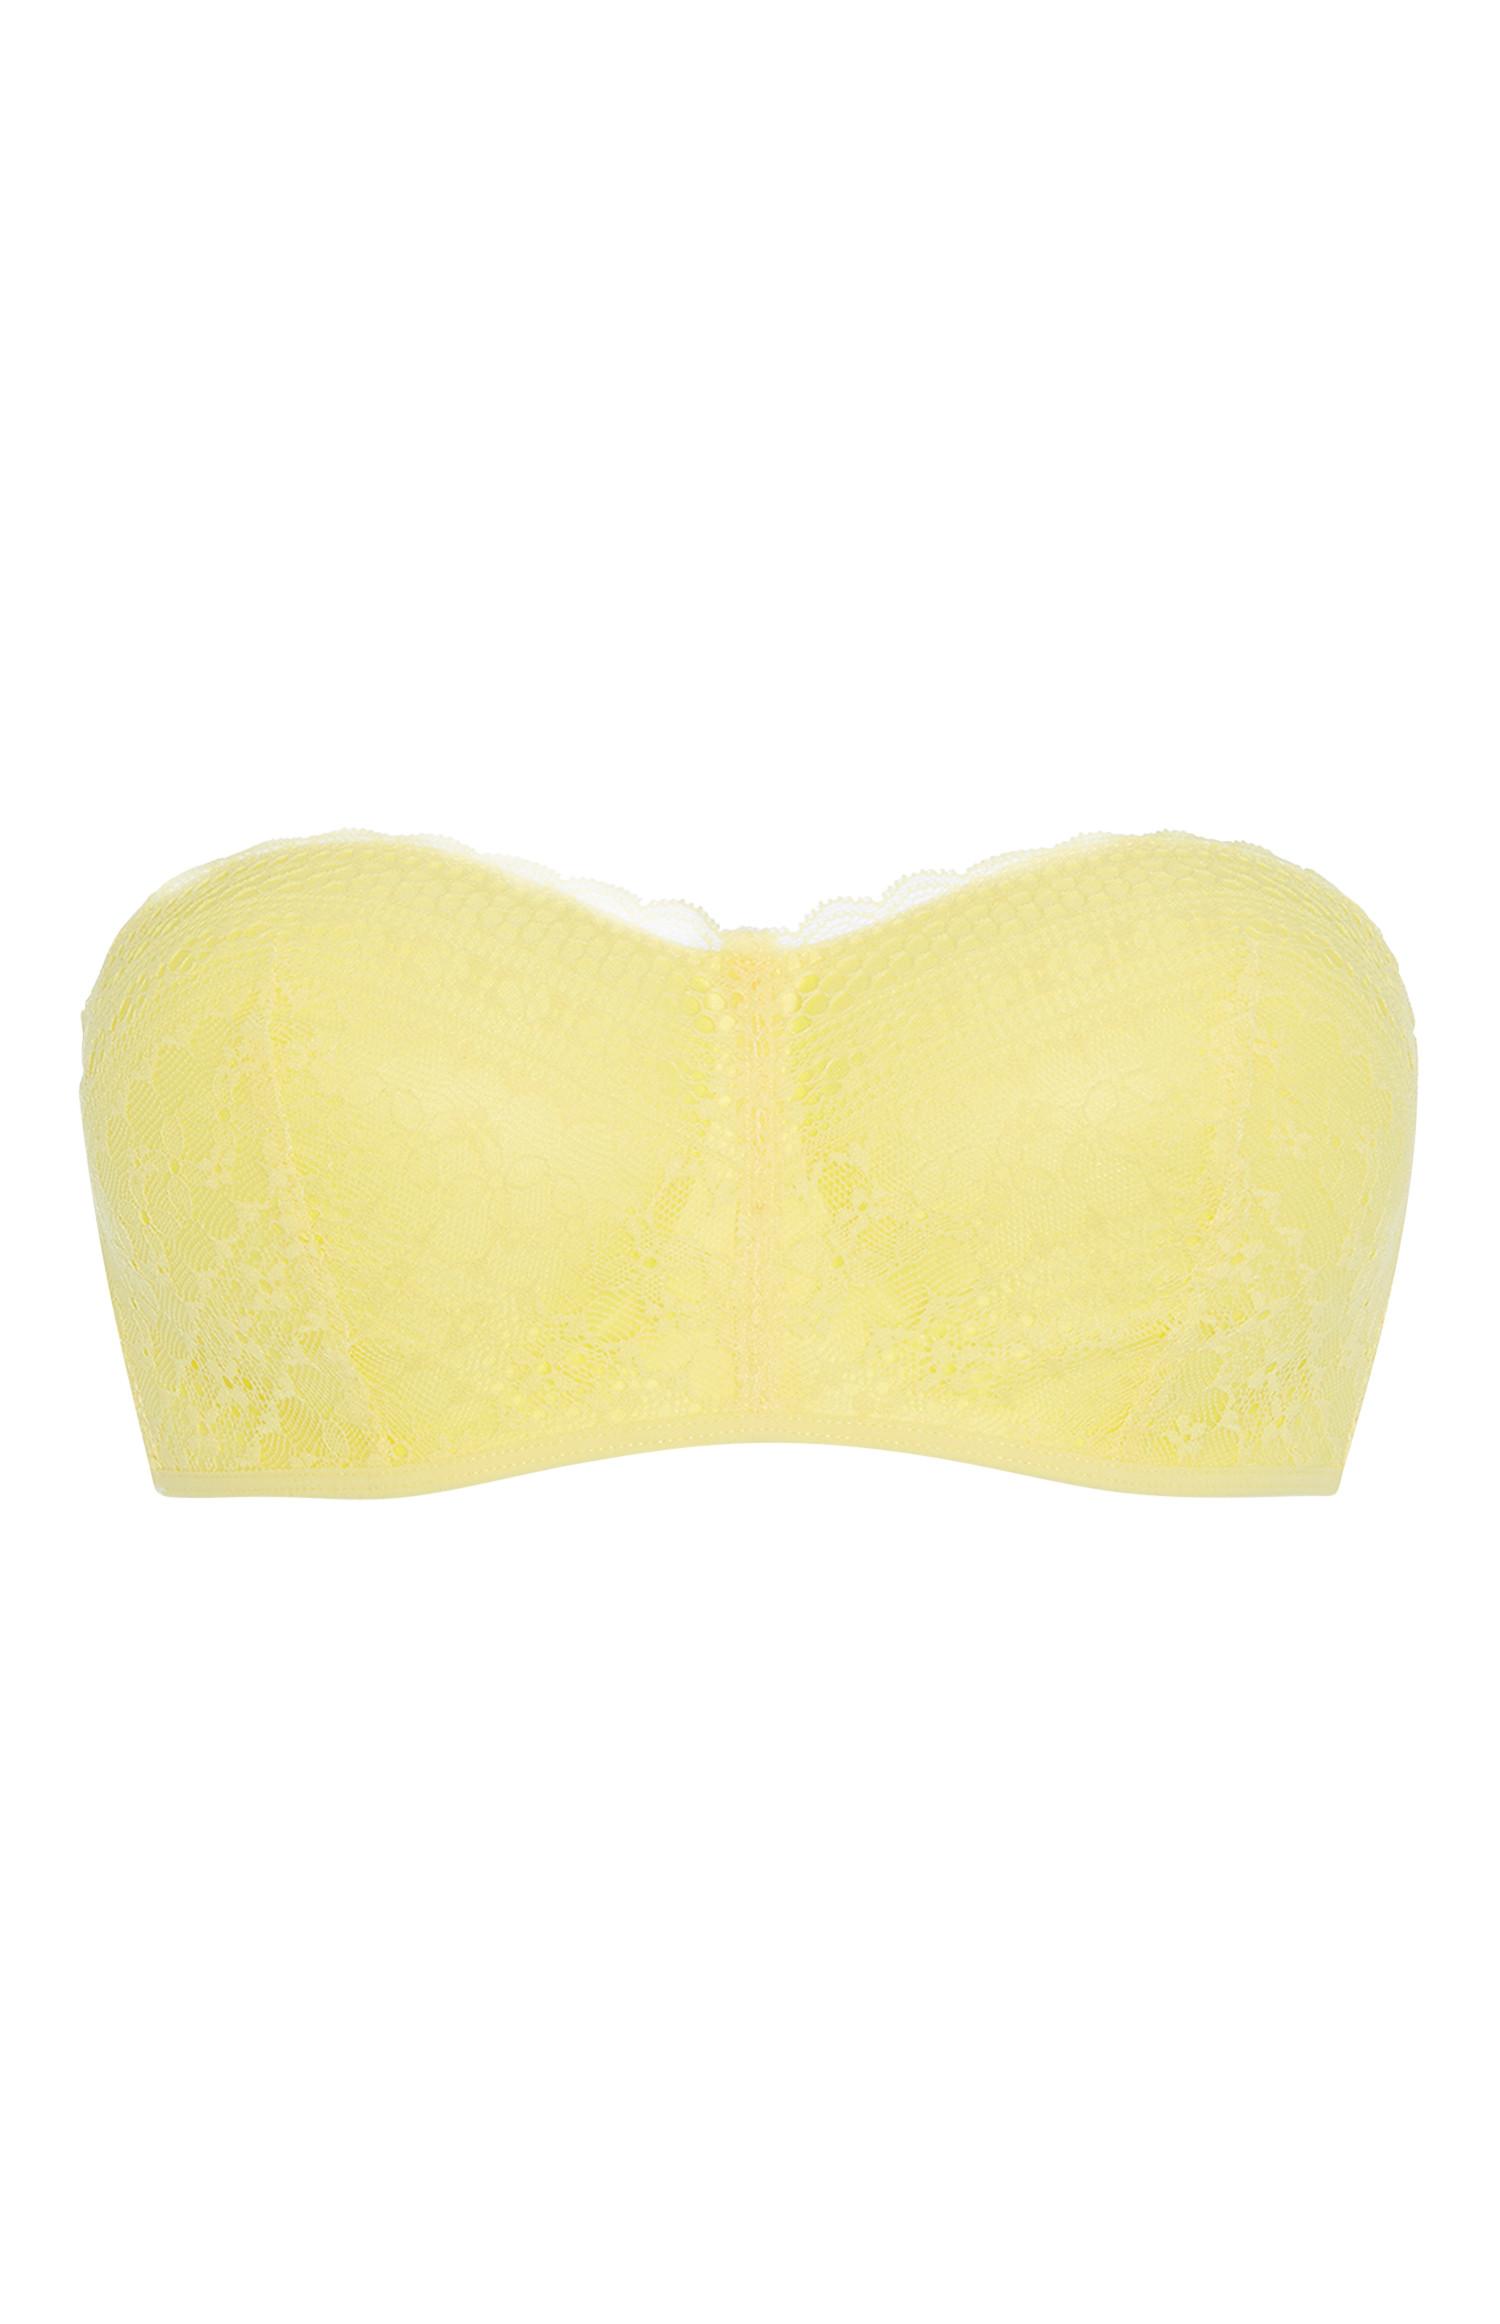 Yellow Lace Bandeau Bralet Bras Lingerie Underwear Womens 0803